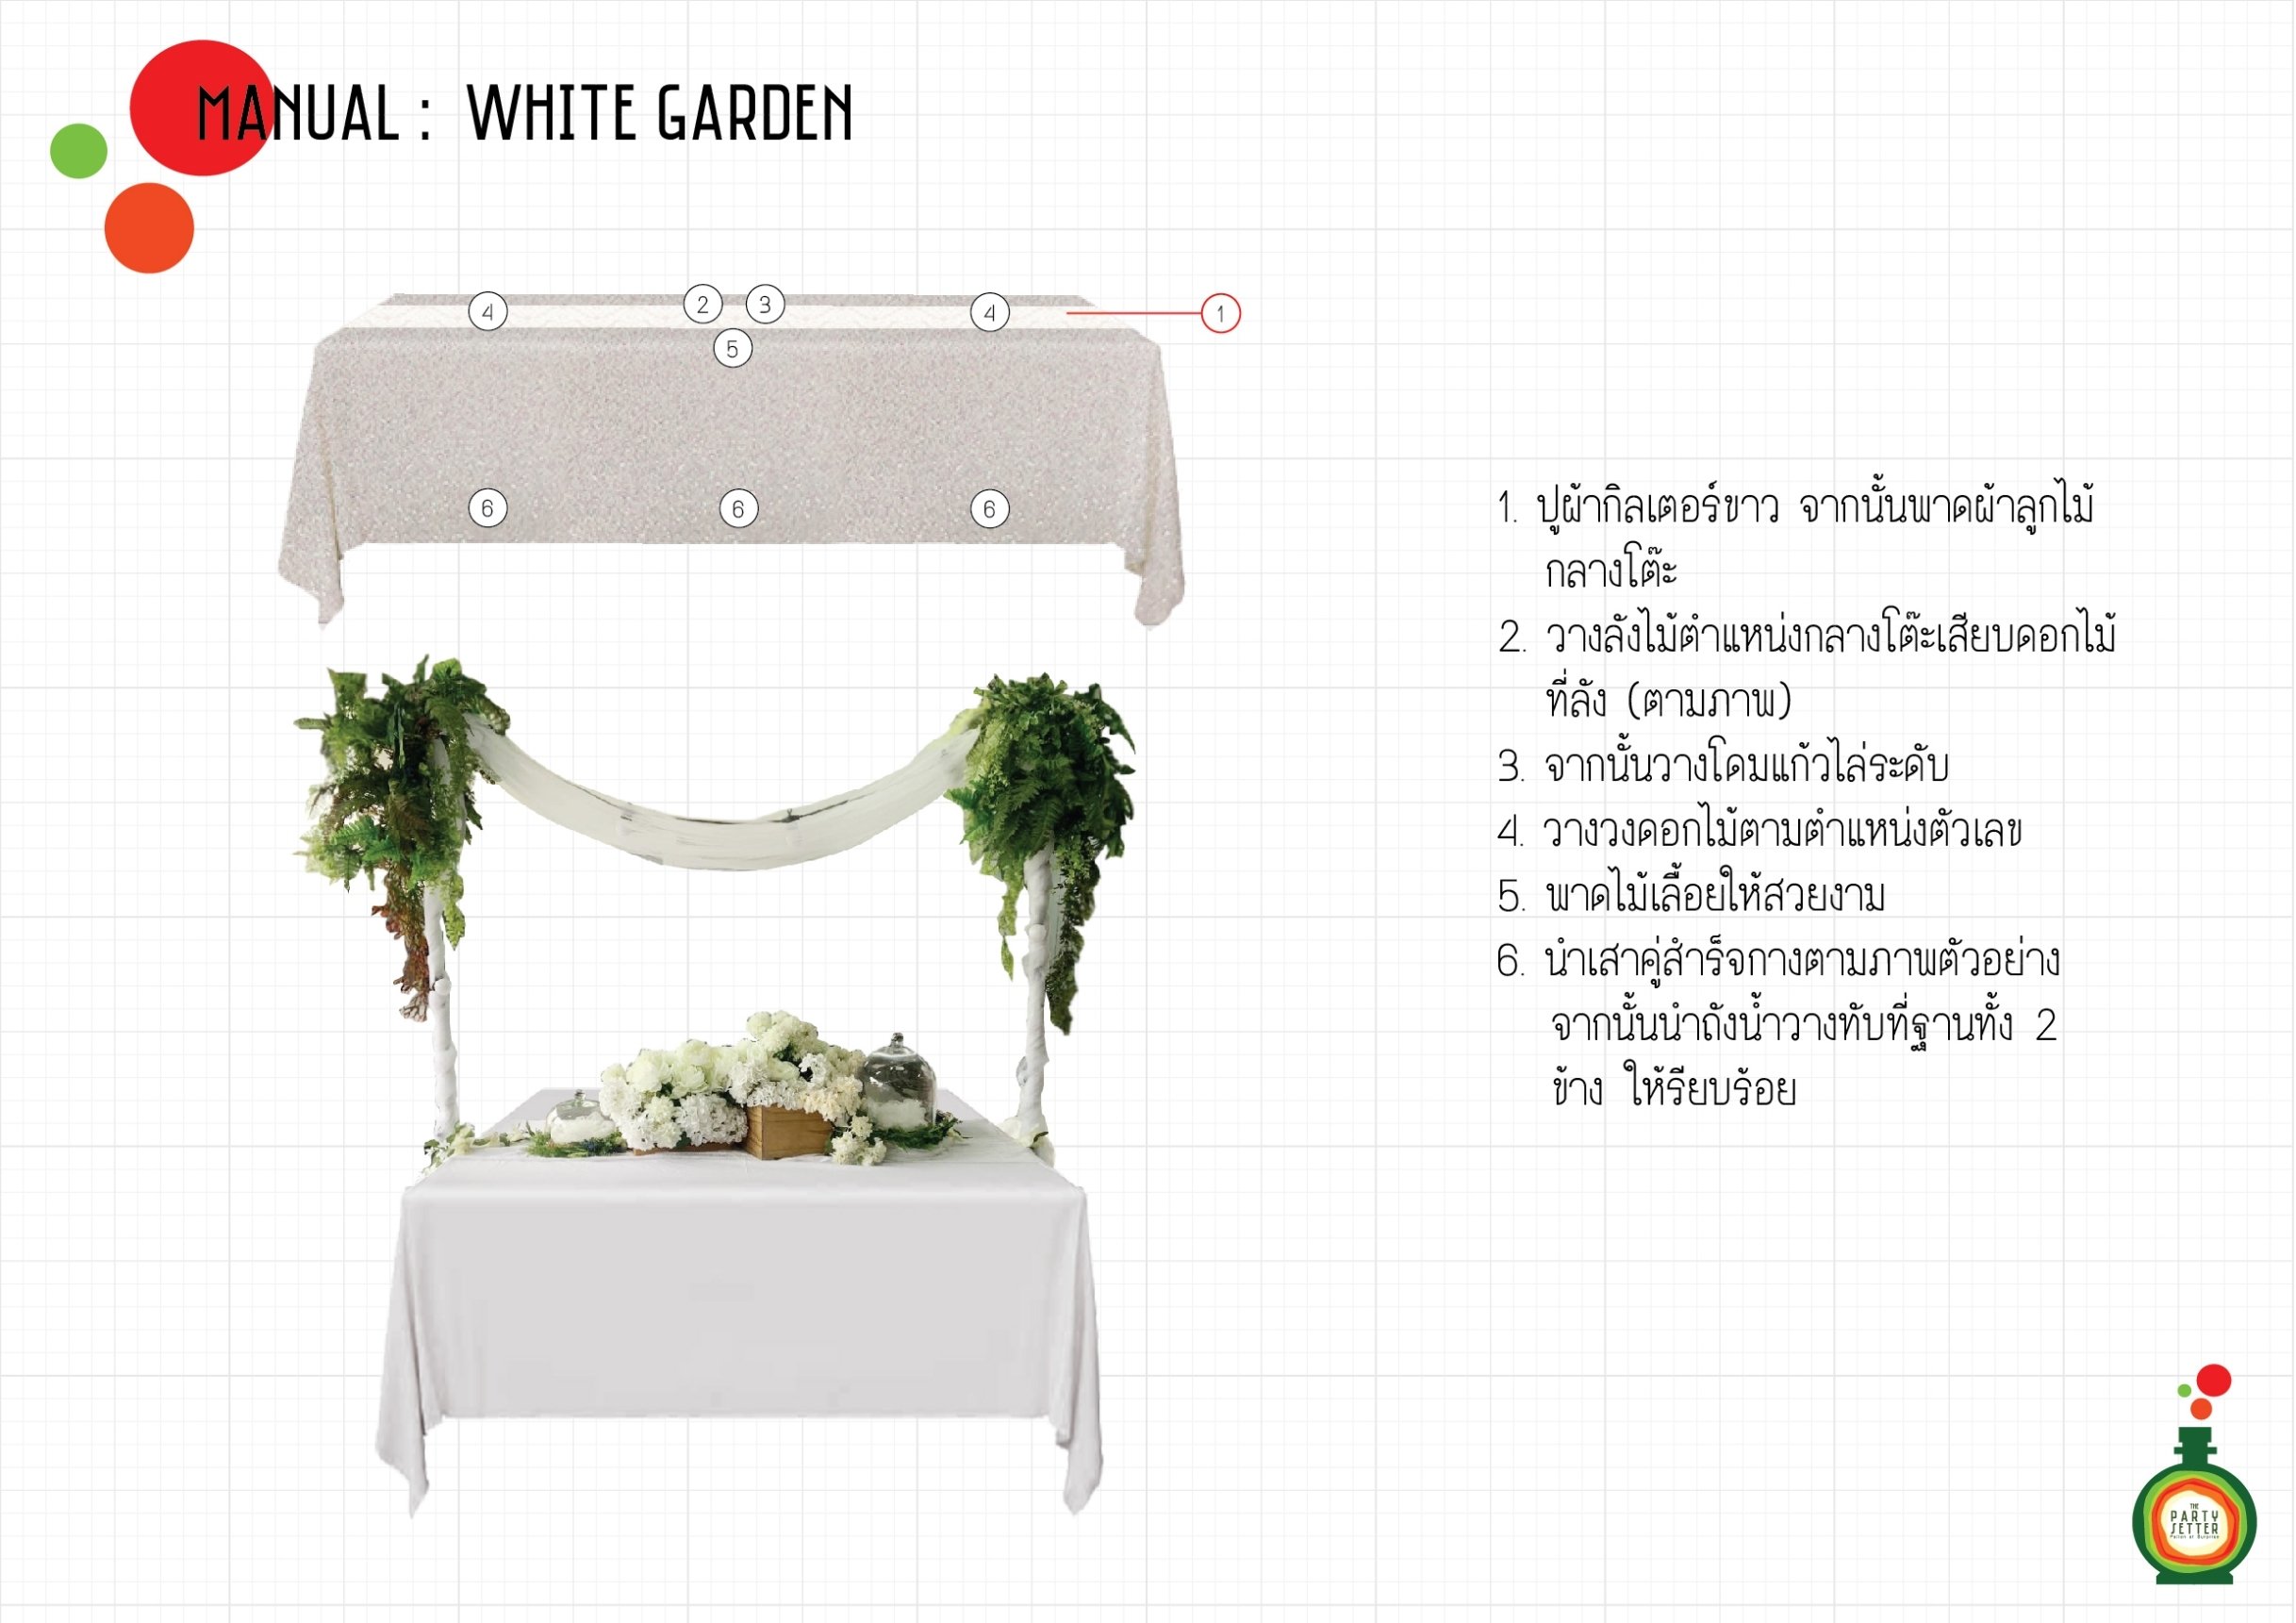 Manual_White Garden-02-01.jpg